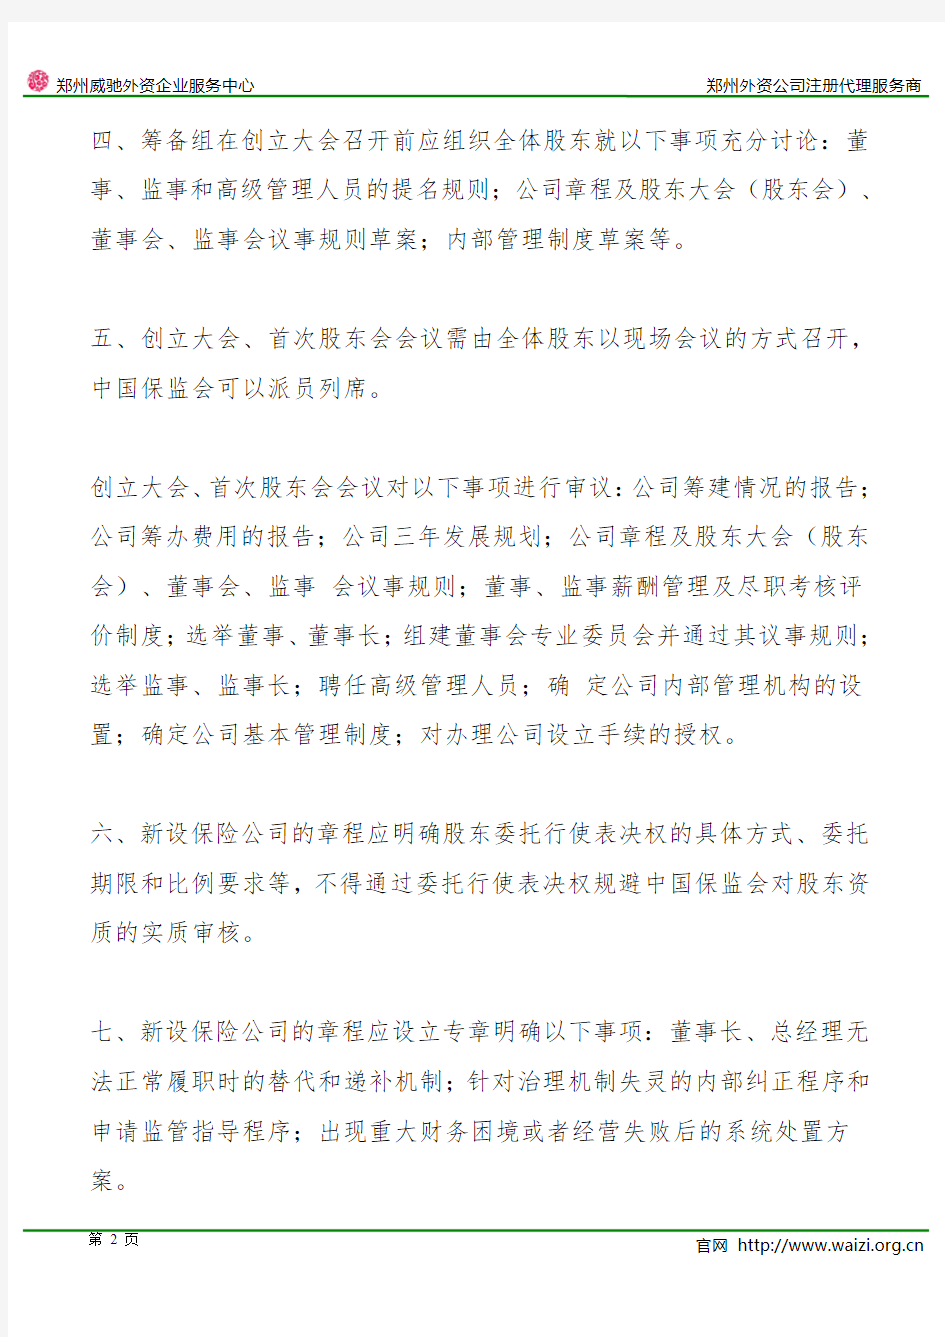 保监发〔2015〕61号《中国保监会关于加强保险公司筹建期治理机制有关问题的通知》